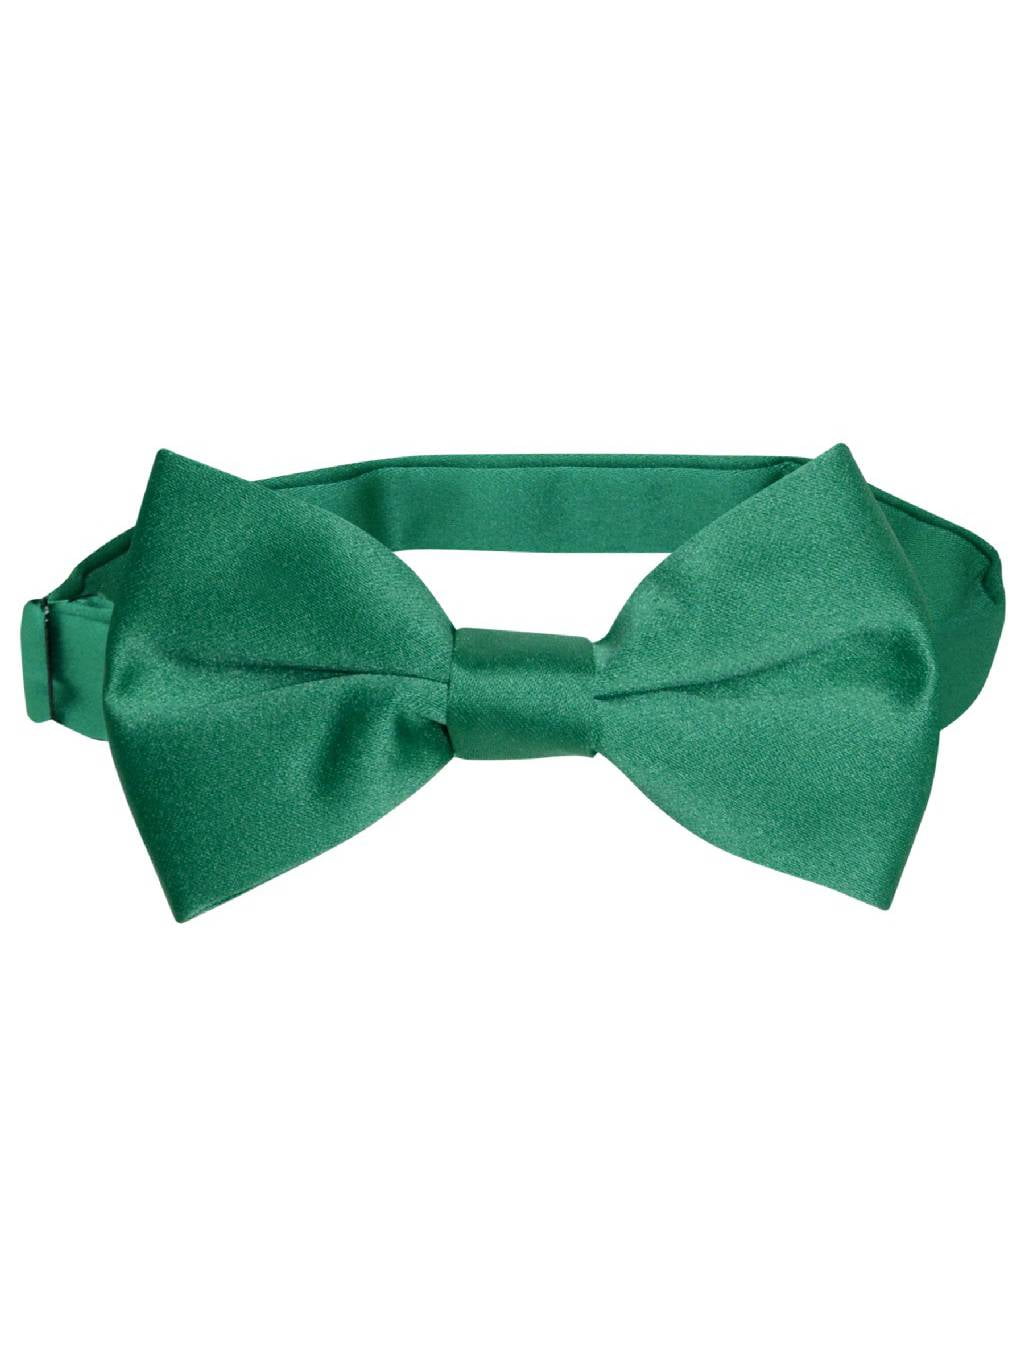 New Y back Men's Vesuvio Napoli Suspenders Bowtie Hankie clip on Emerald Green 